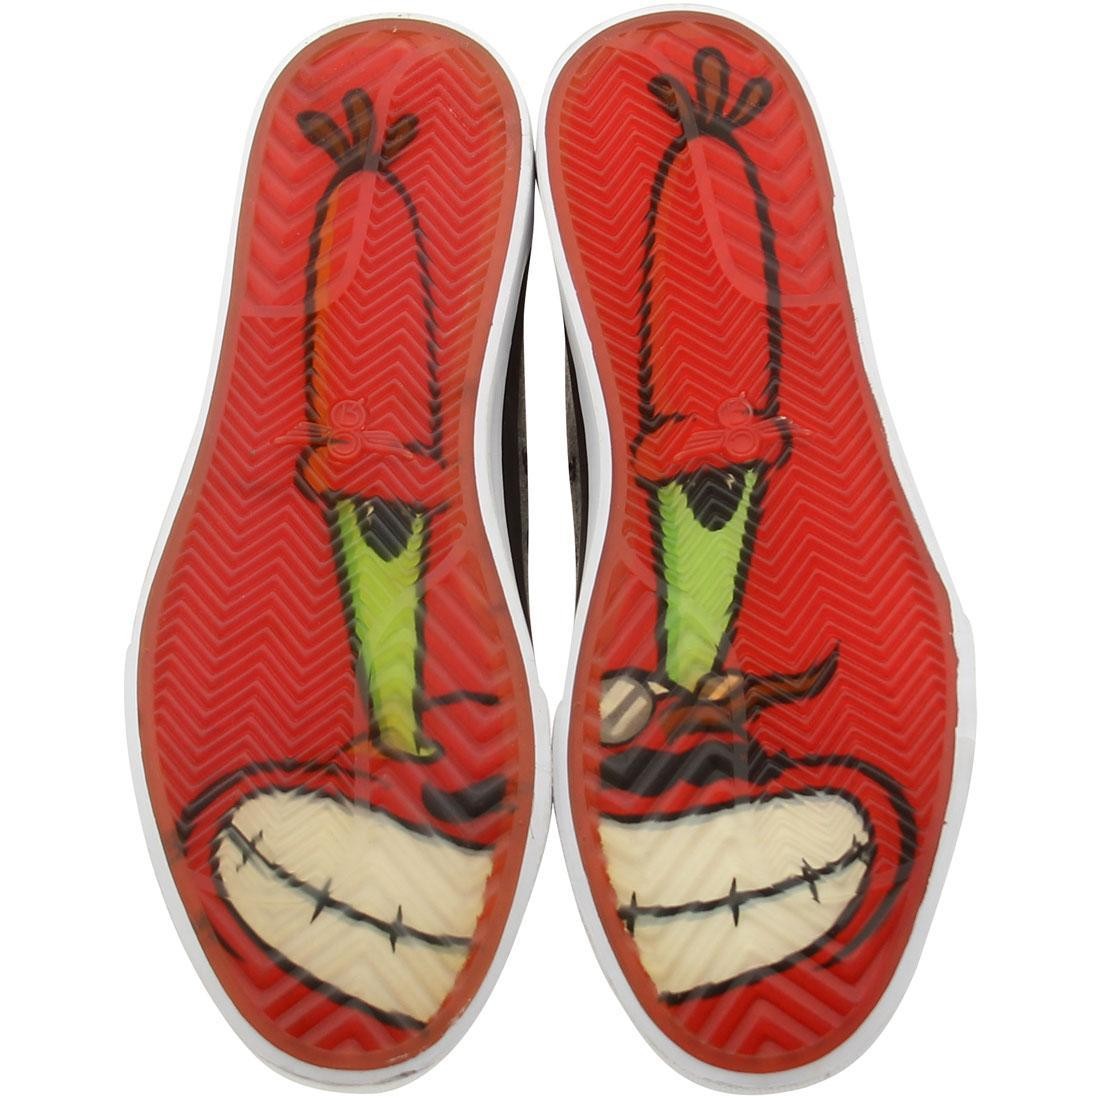 spongebob mr krabs shoes